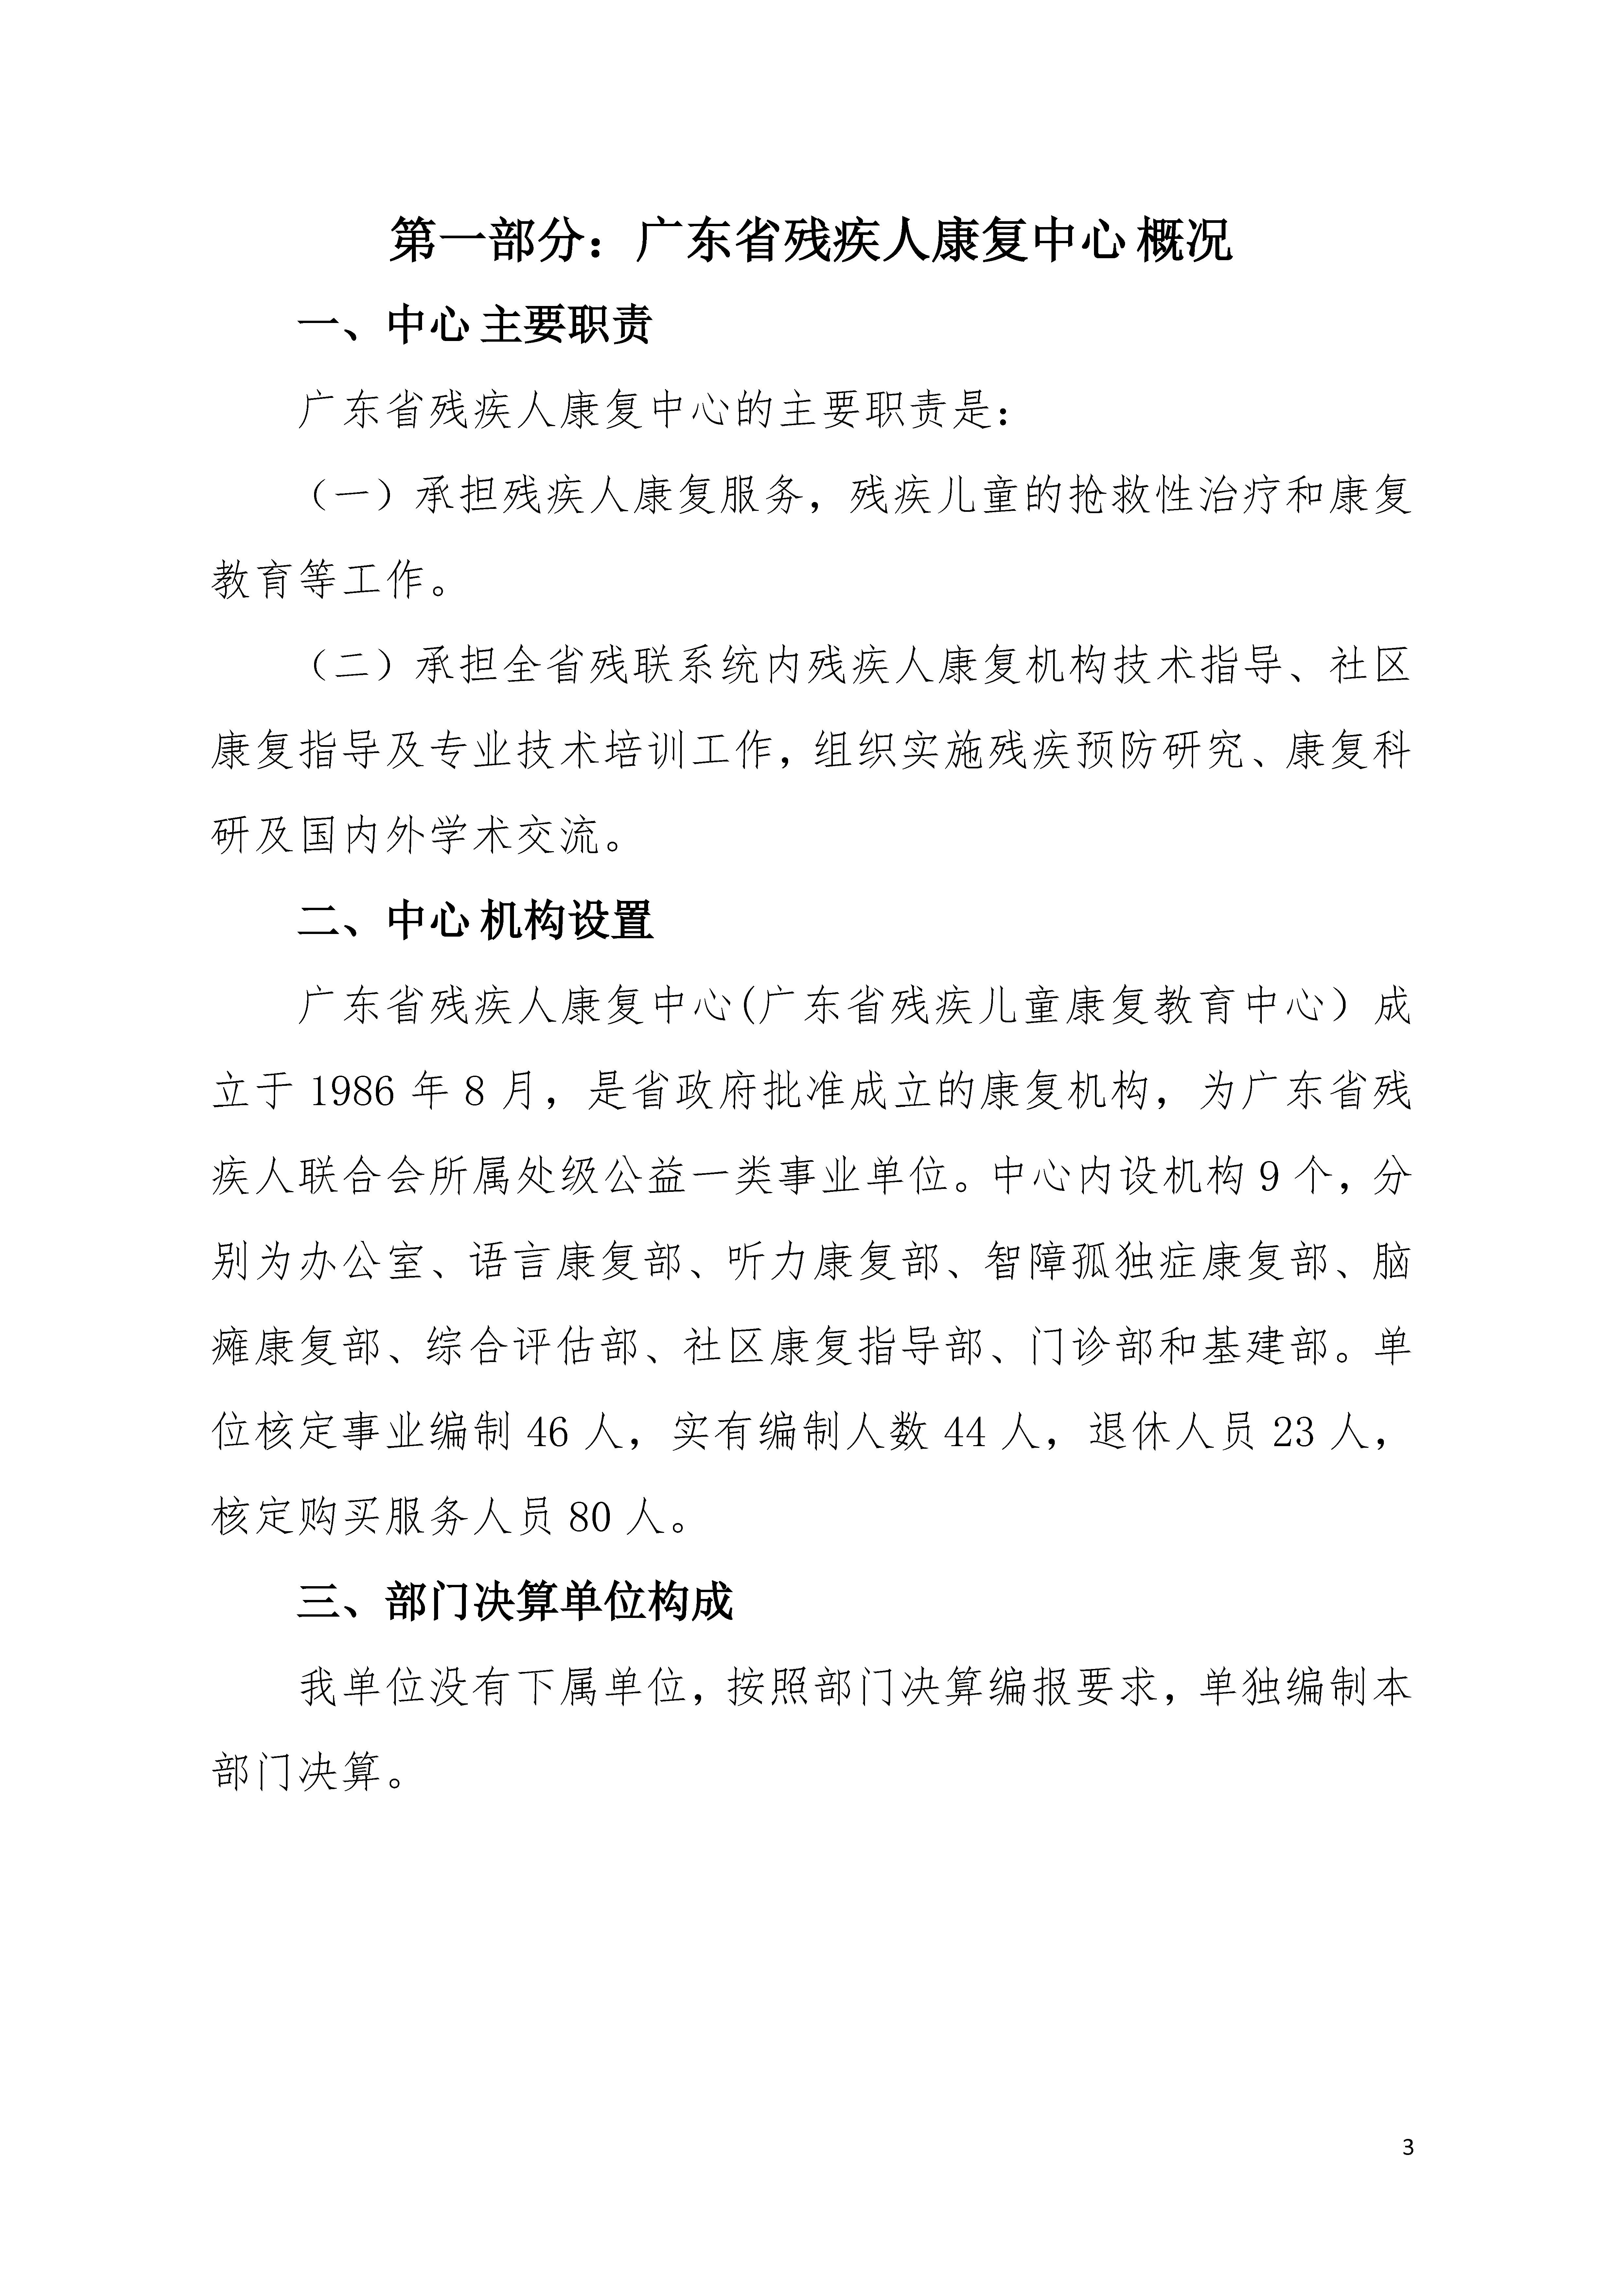 2021年广东省残疾人康复中心部门决算 0629_页面_03.jpg